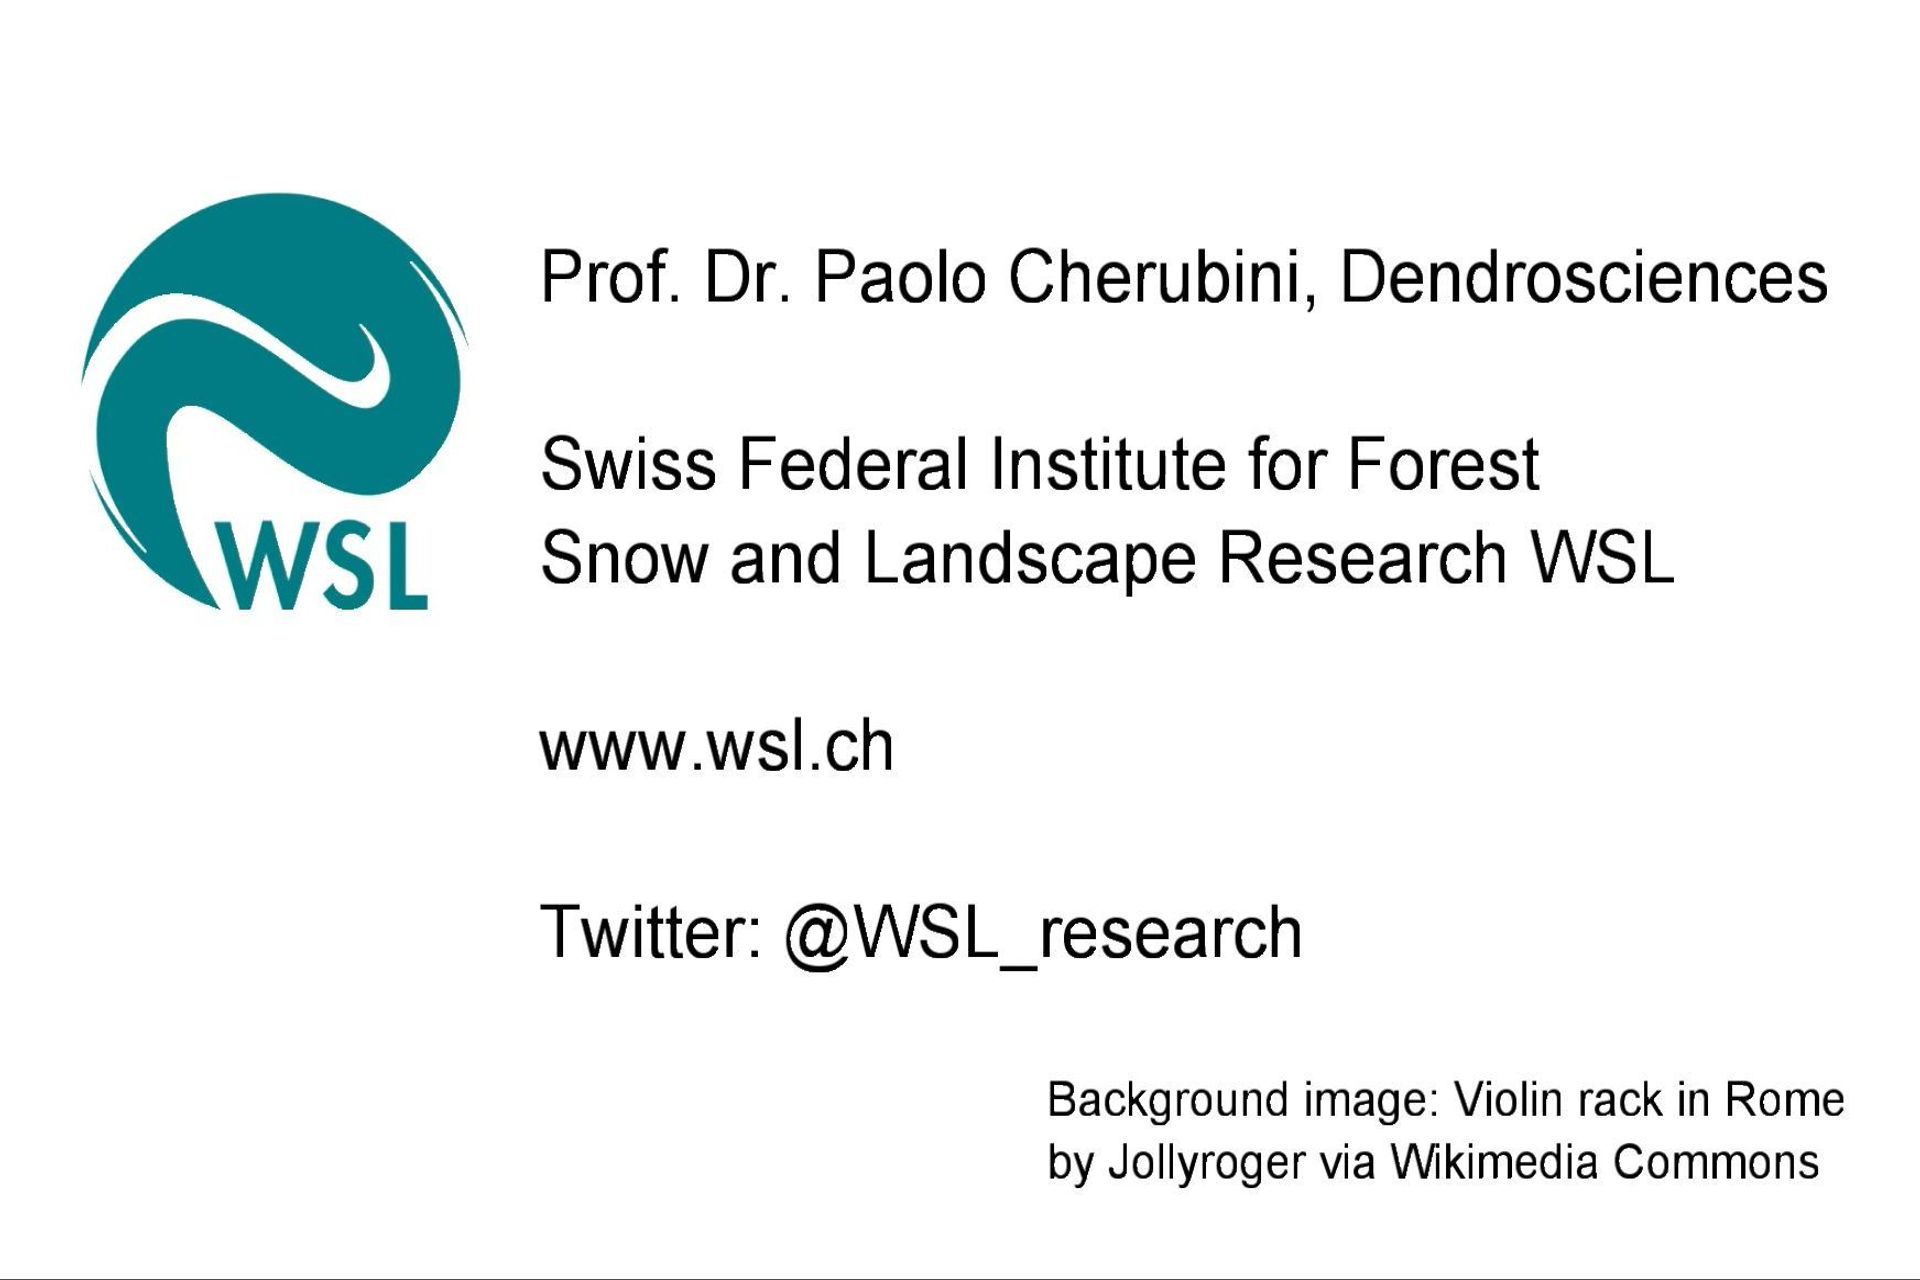 Paolo Cherubini è Senior Scientist in Dinamica del Bosco presso l’Istituto Federale di Ricerca per la Foresta, la Neve e il Paesaggio in Svizzera